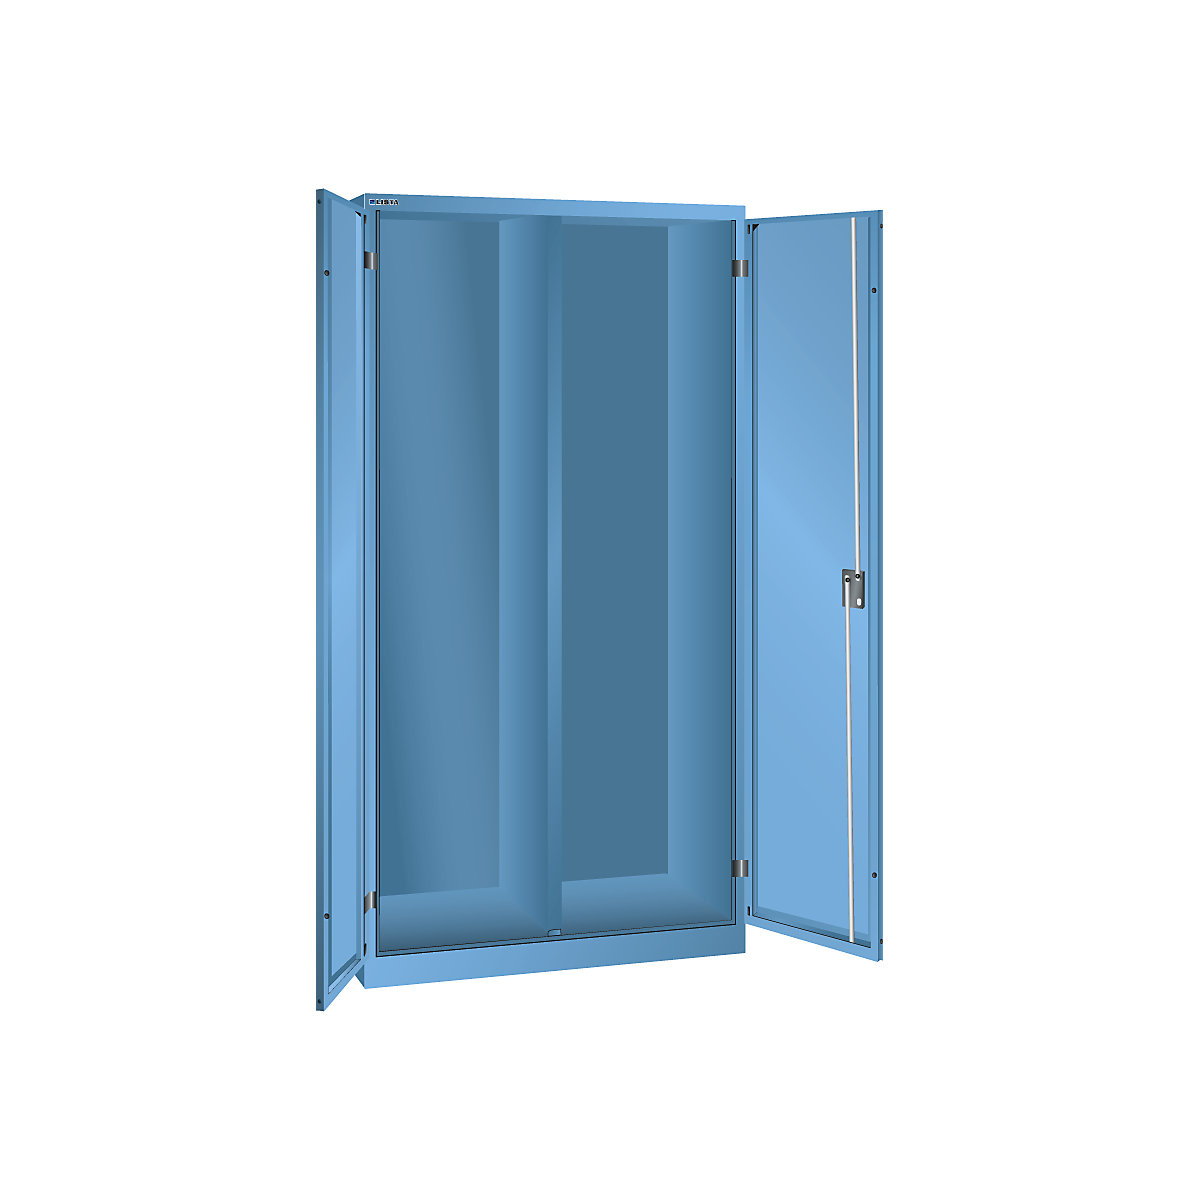 Skříň s otočnými dveřmi, v x š x h 1950 x 1000 x 580 mm - LISTA